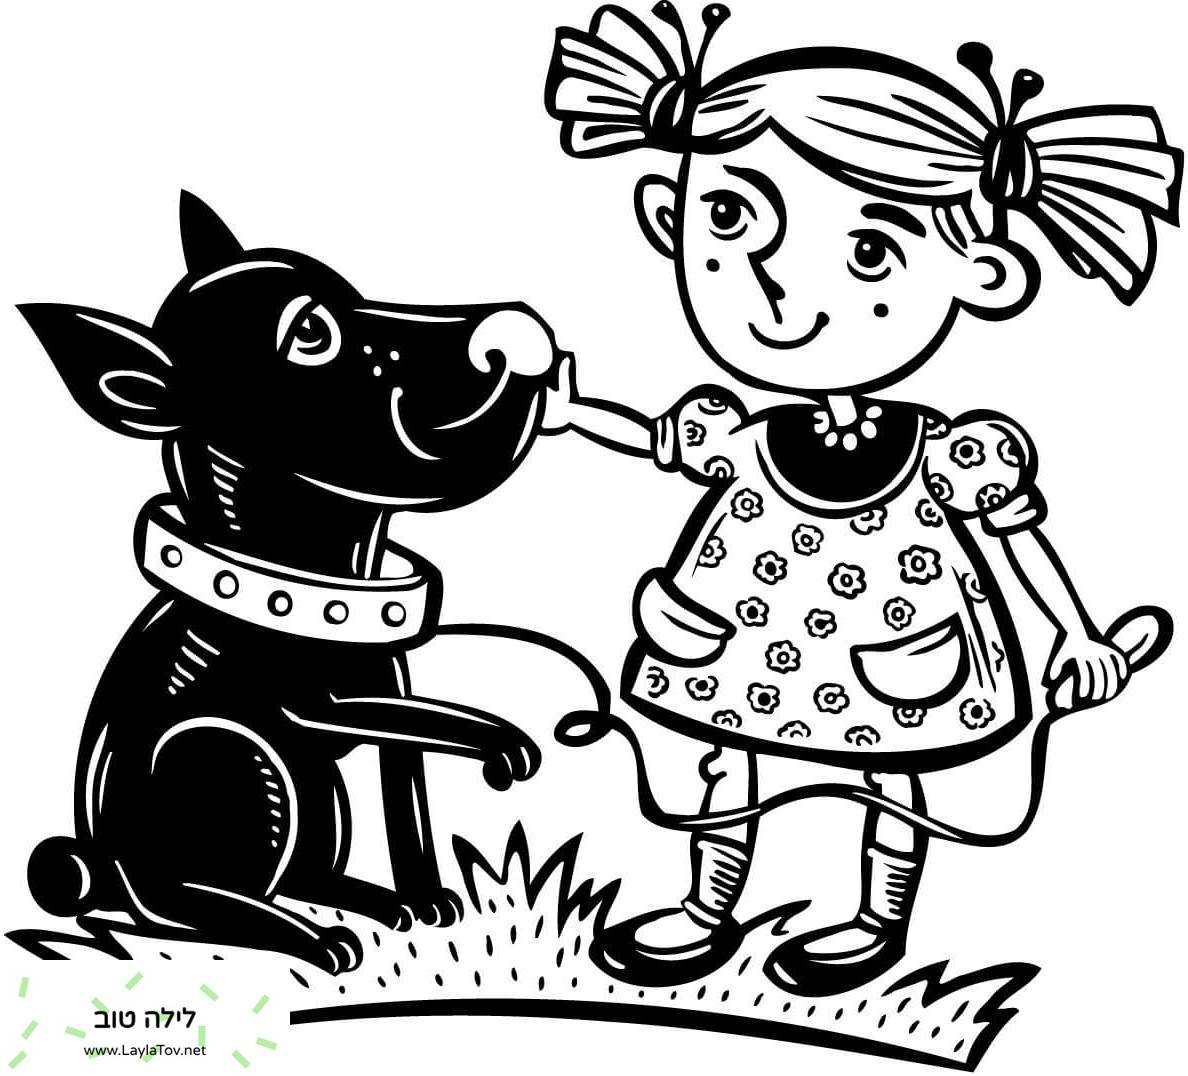 ילדה עם כלב המחמד שלה